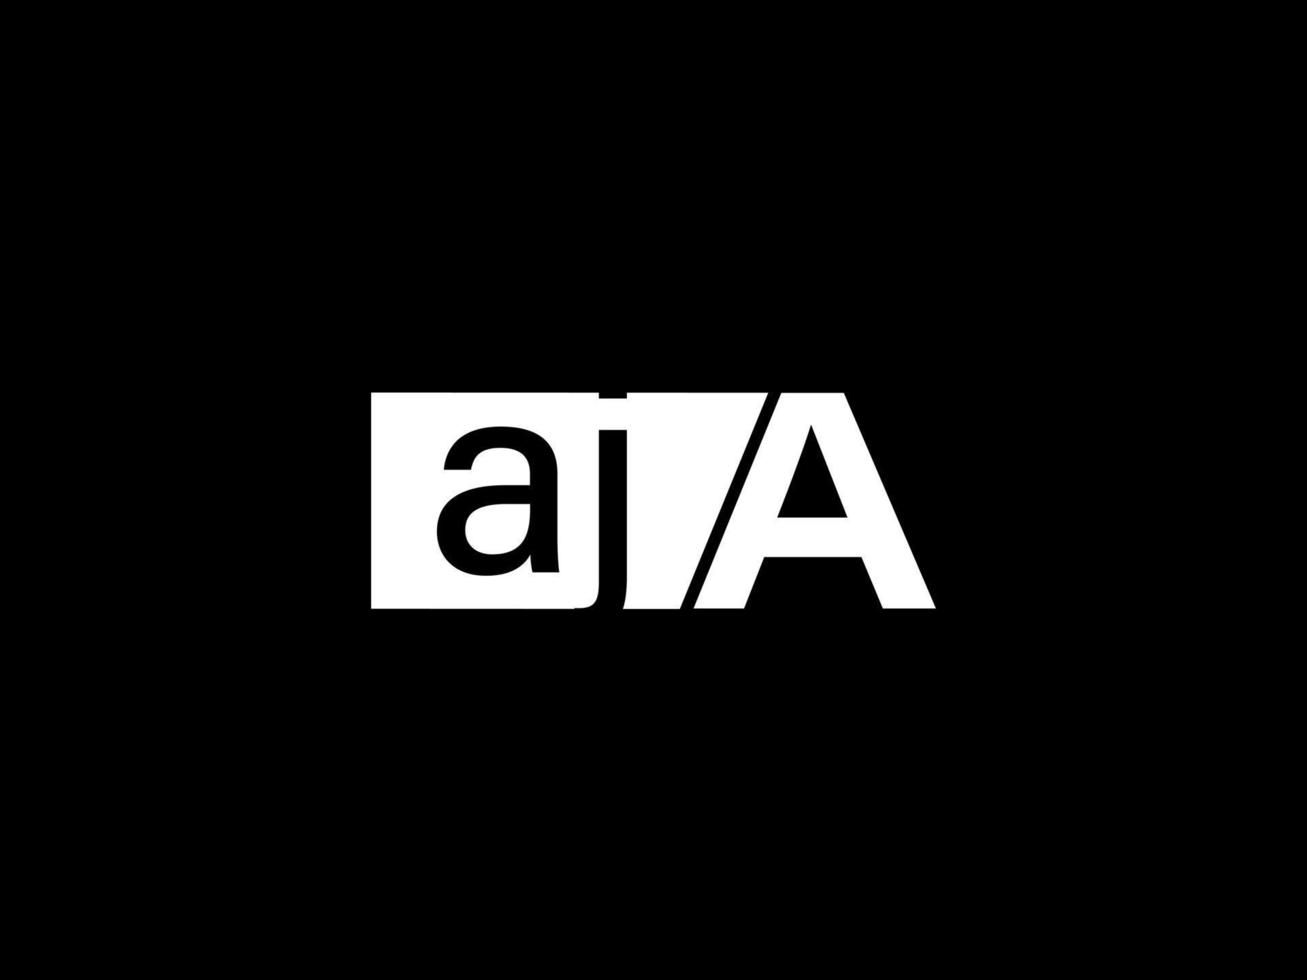 aja Logo und Grafikdesign Vektorgrafiken, Symbole isoliert auf schwarzem Hintergrund vektor